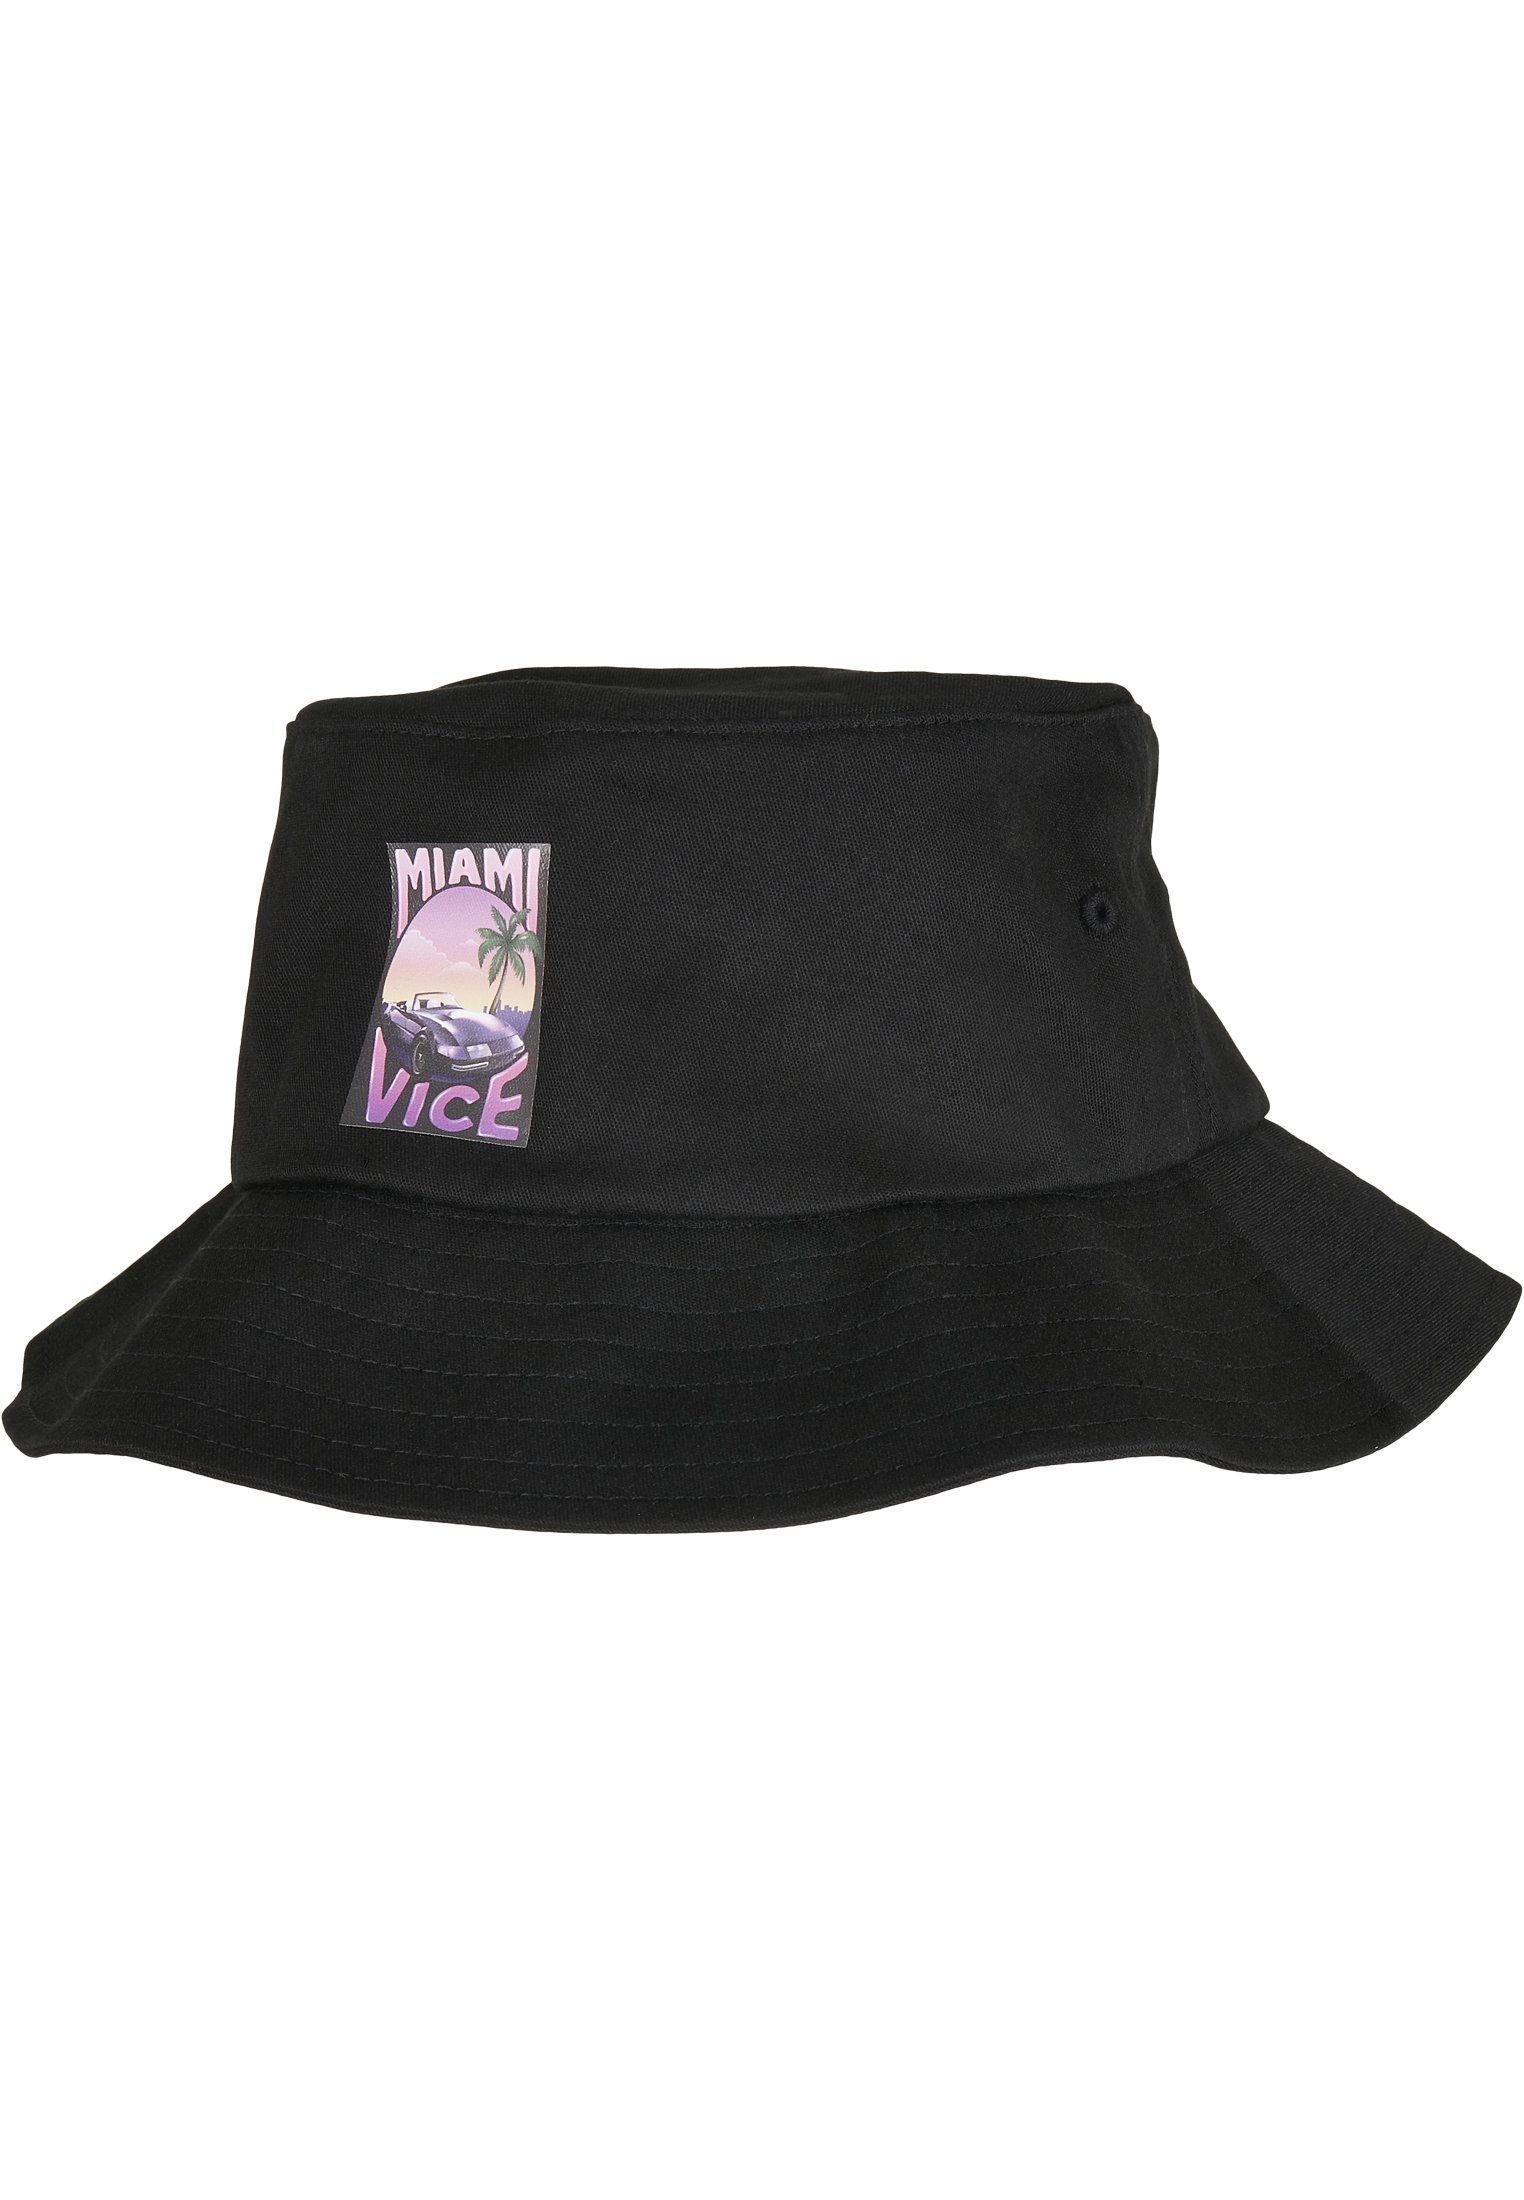 Hat Cap Hat Vice Merchcode Print Miami Flex Bucket Bucket